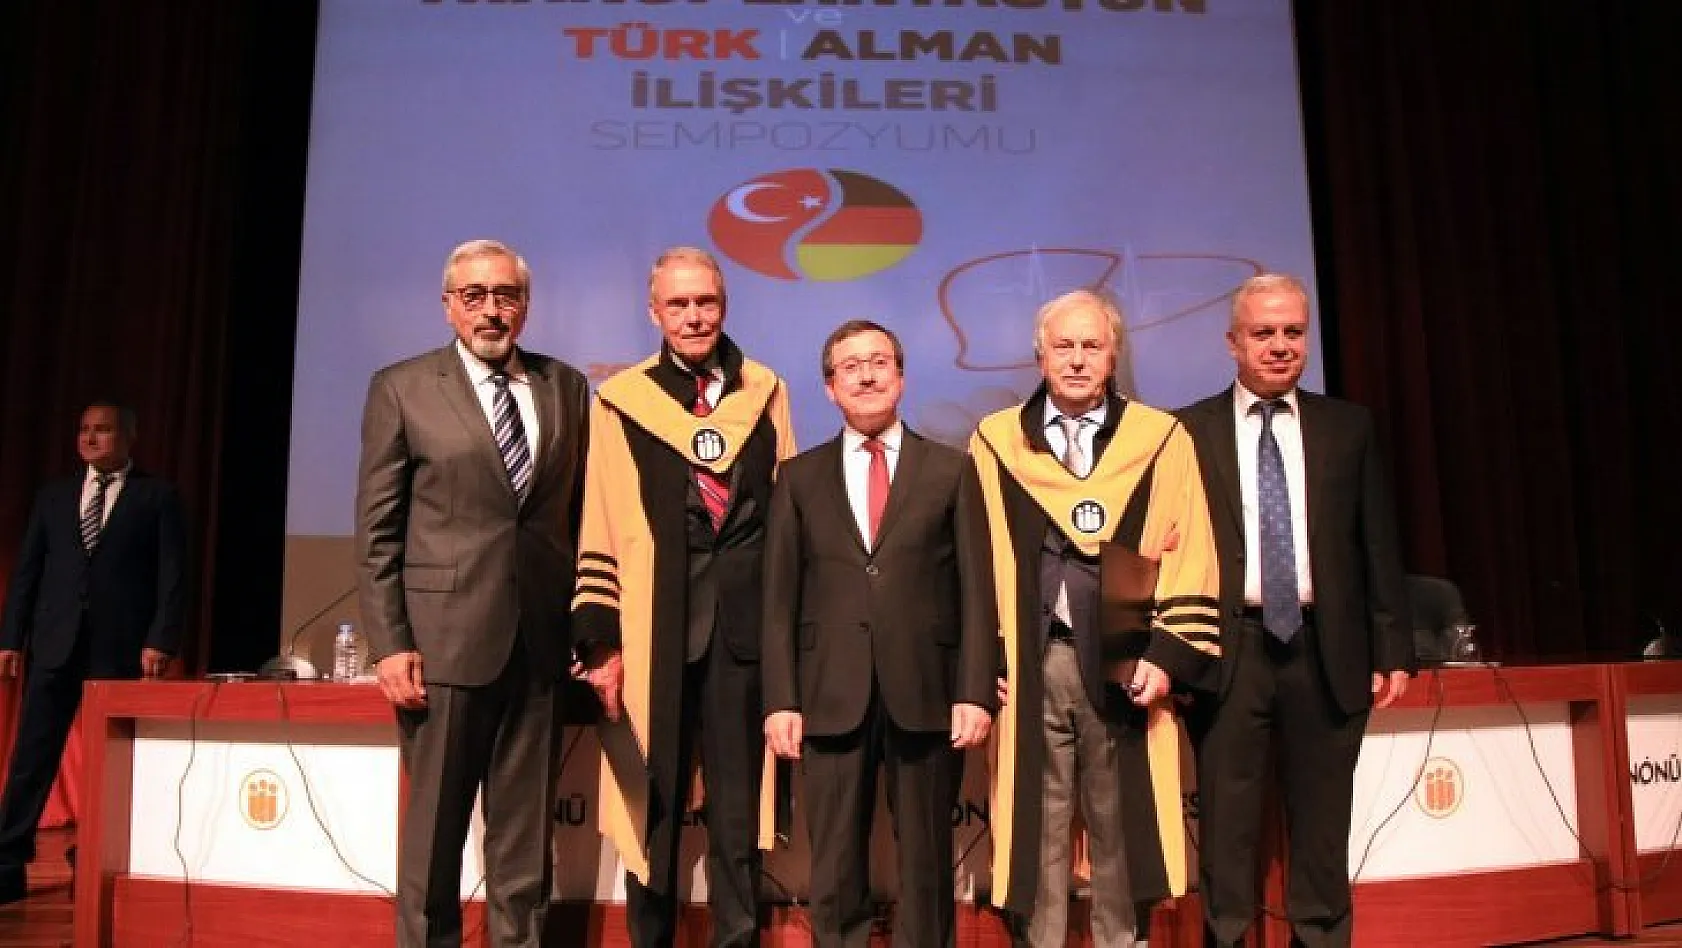 Türk-Alman ilişkileri tartışılacak